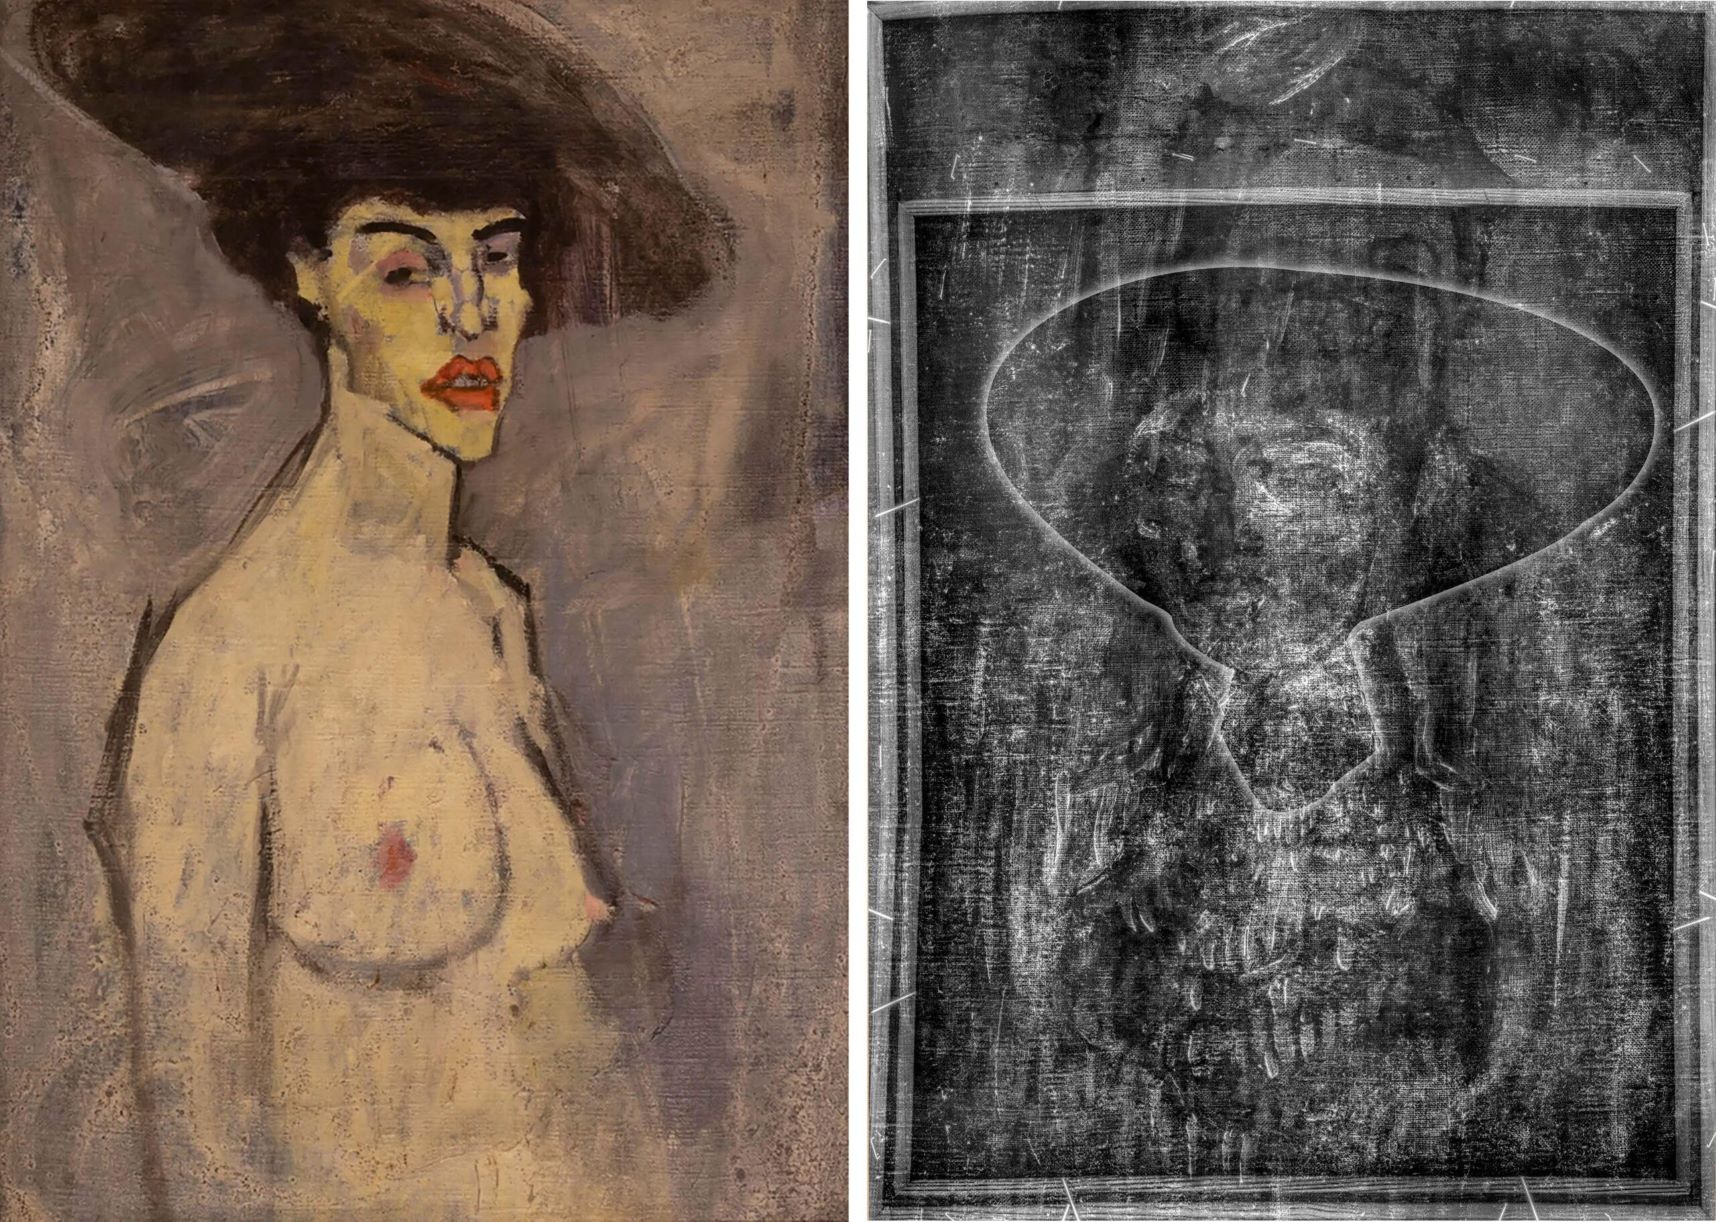 Αριστερά το έργο του Μοντιλιάνι «Γυμνή με ένα καπέλο» και δεξιά τα σχέδια ενός προσώπου, κάτω από τον πίνακα